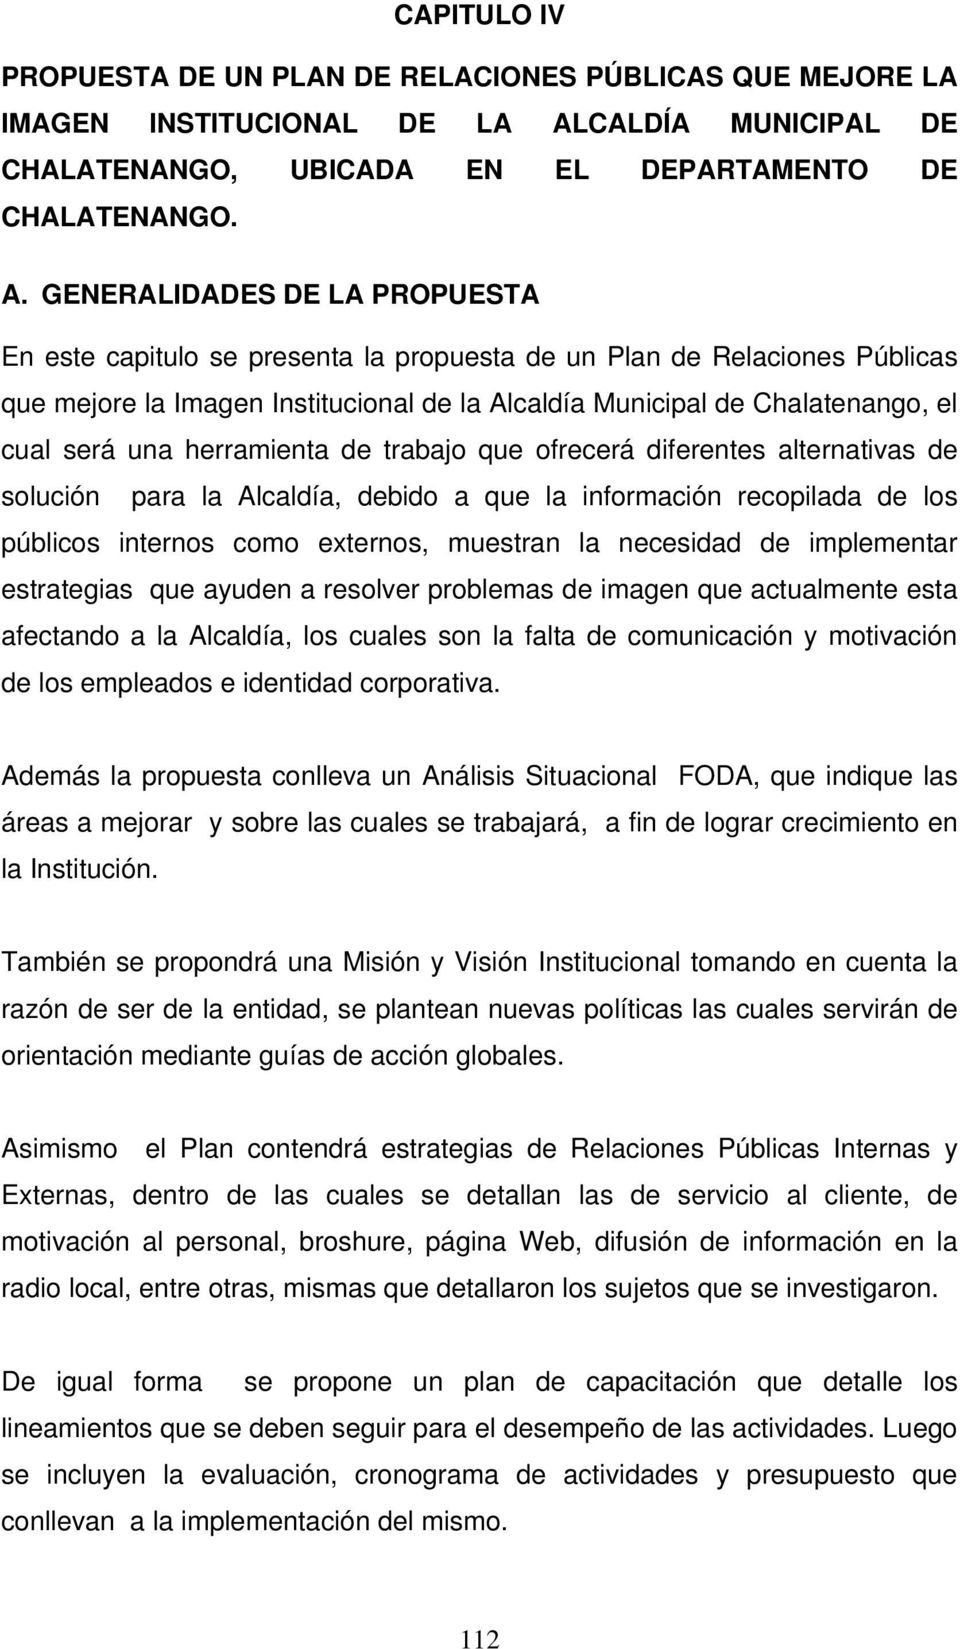 GENERALIDADES DE LA PROPUESTA En este capitulo se presenta la propuesta de un Plan de Relaciones Públicas que mejore la Imagen Institucional de la Alcaldía Municipal de Chalatenango, el cual será una